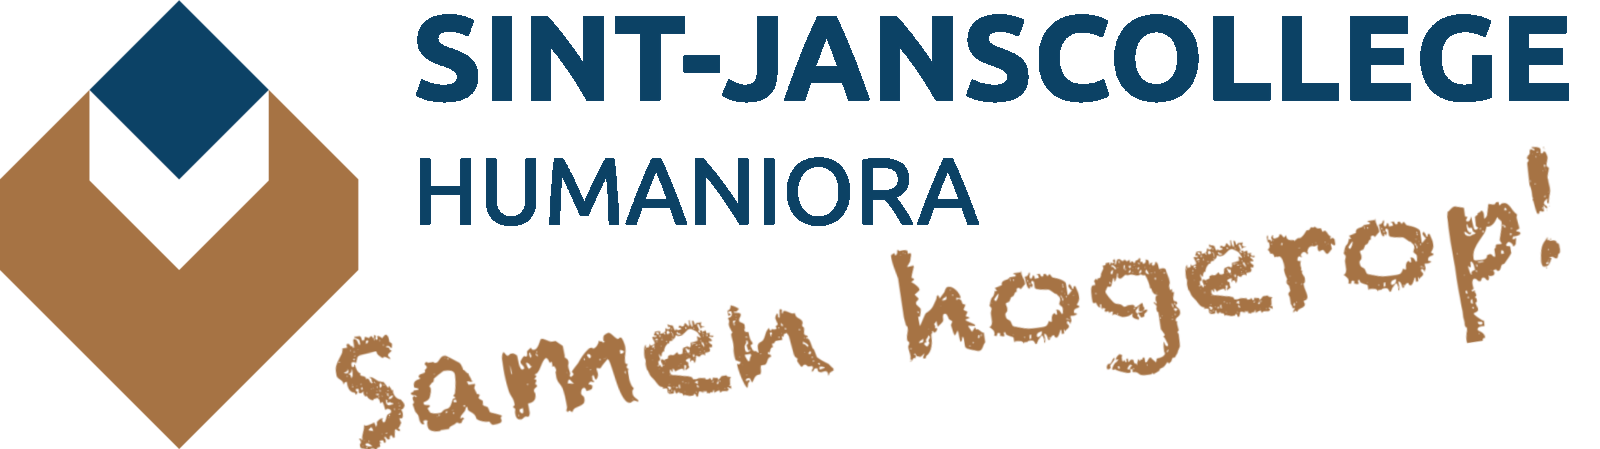 Sint-Janscollege Humaniora